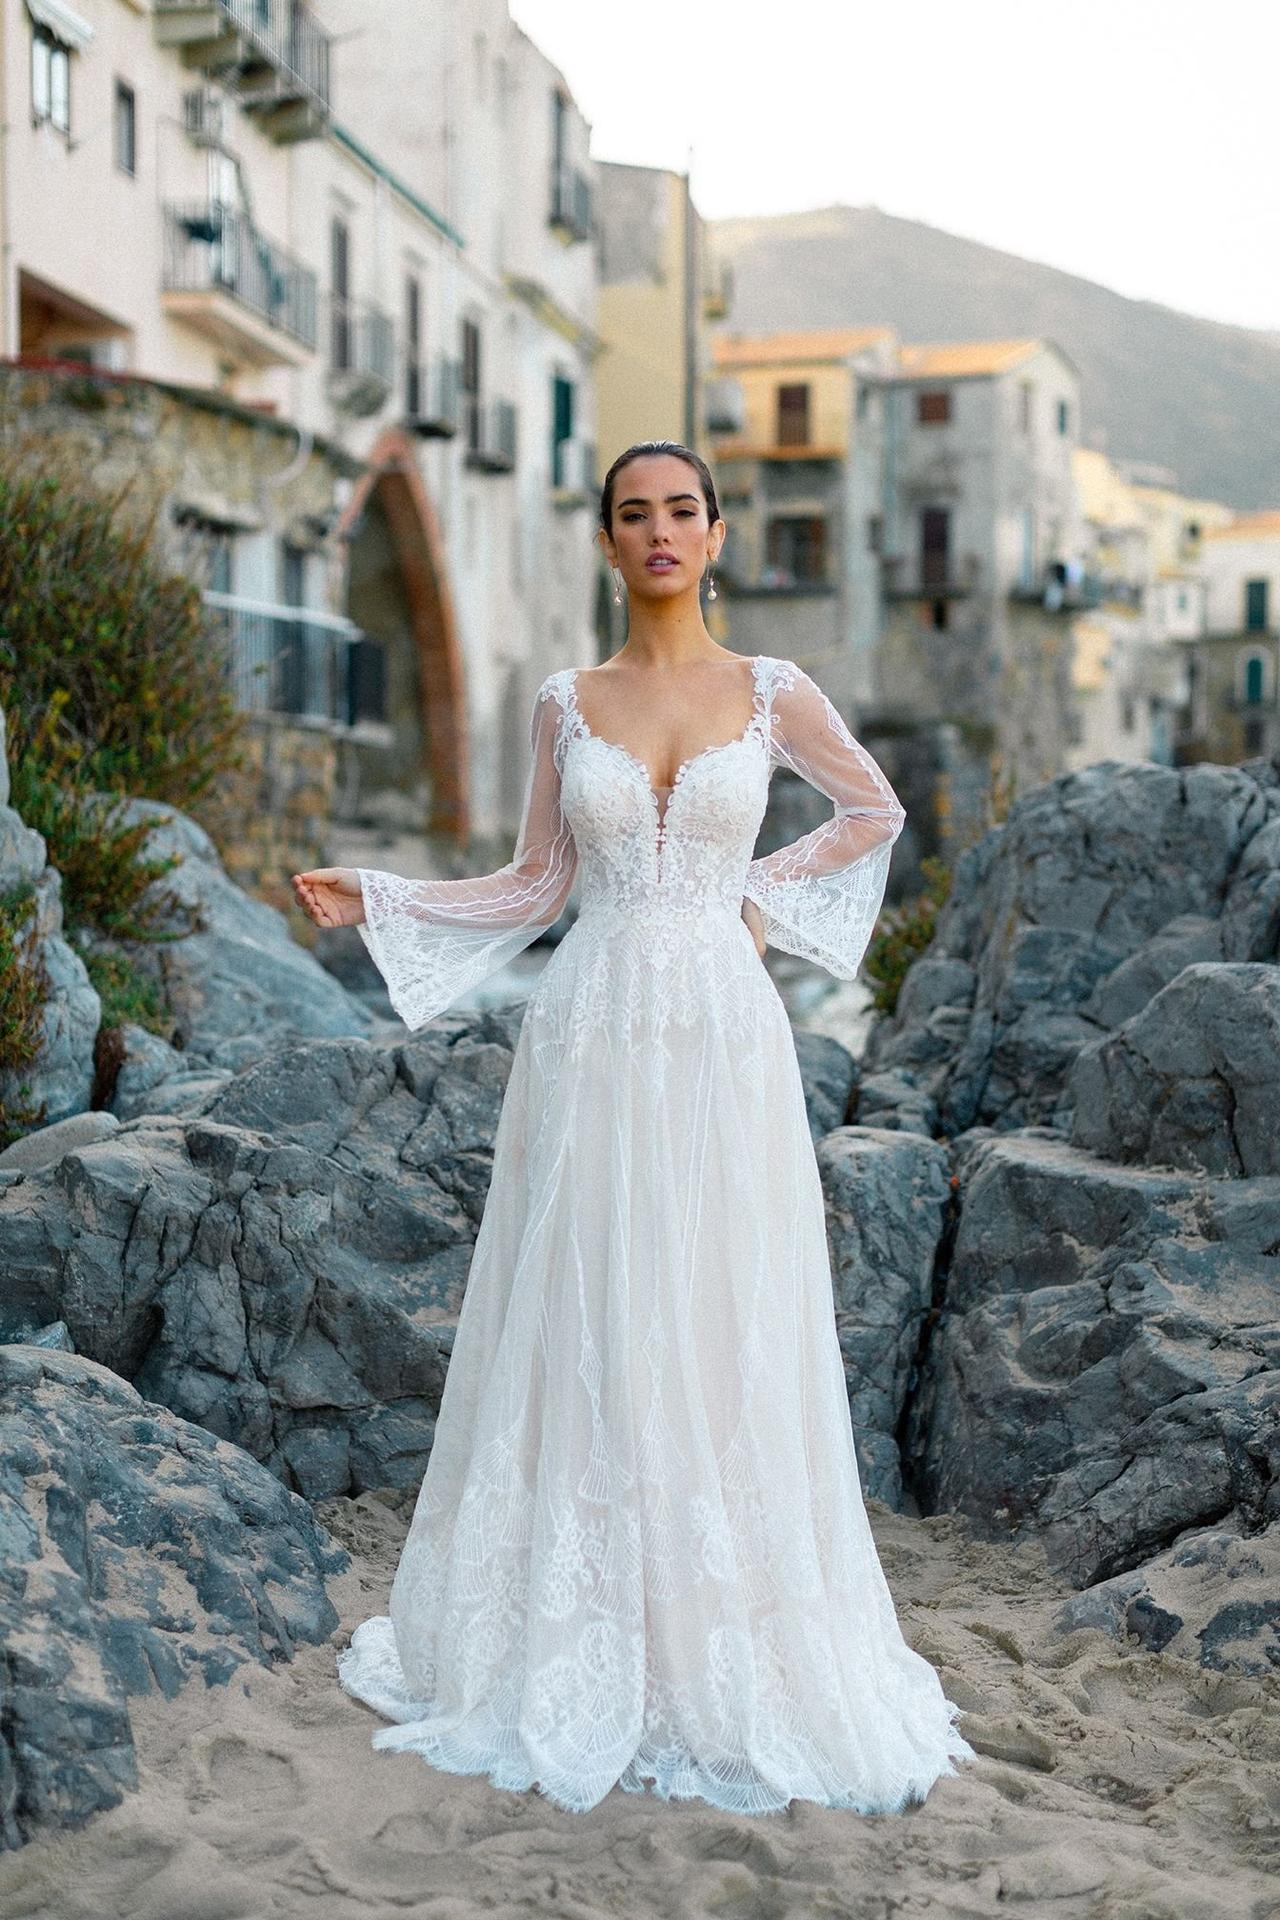 Tipos de mangas para el vestido de novia: estas son las 12 más populares